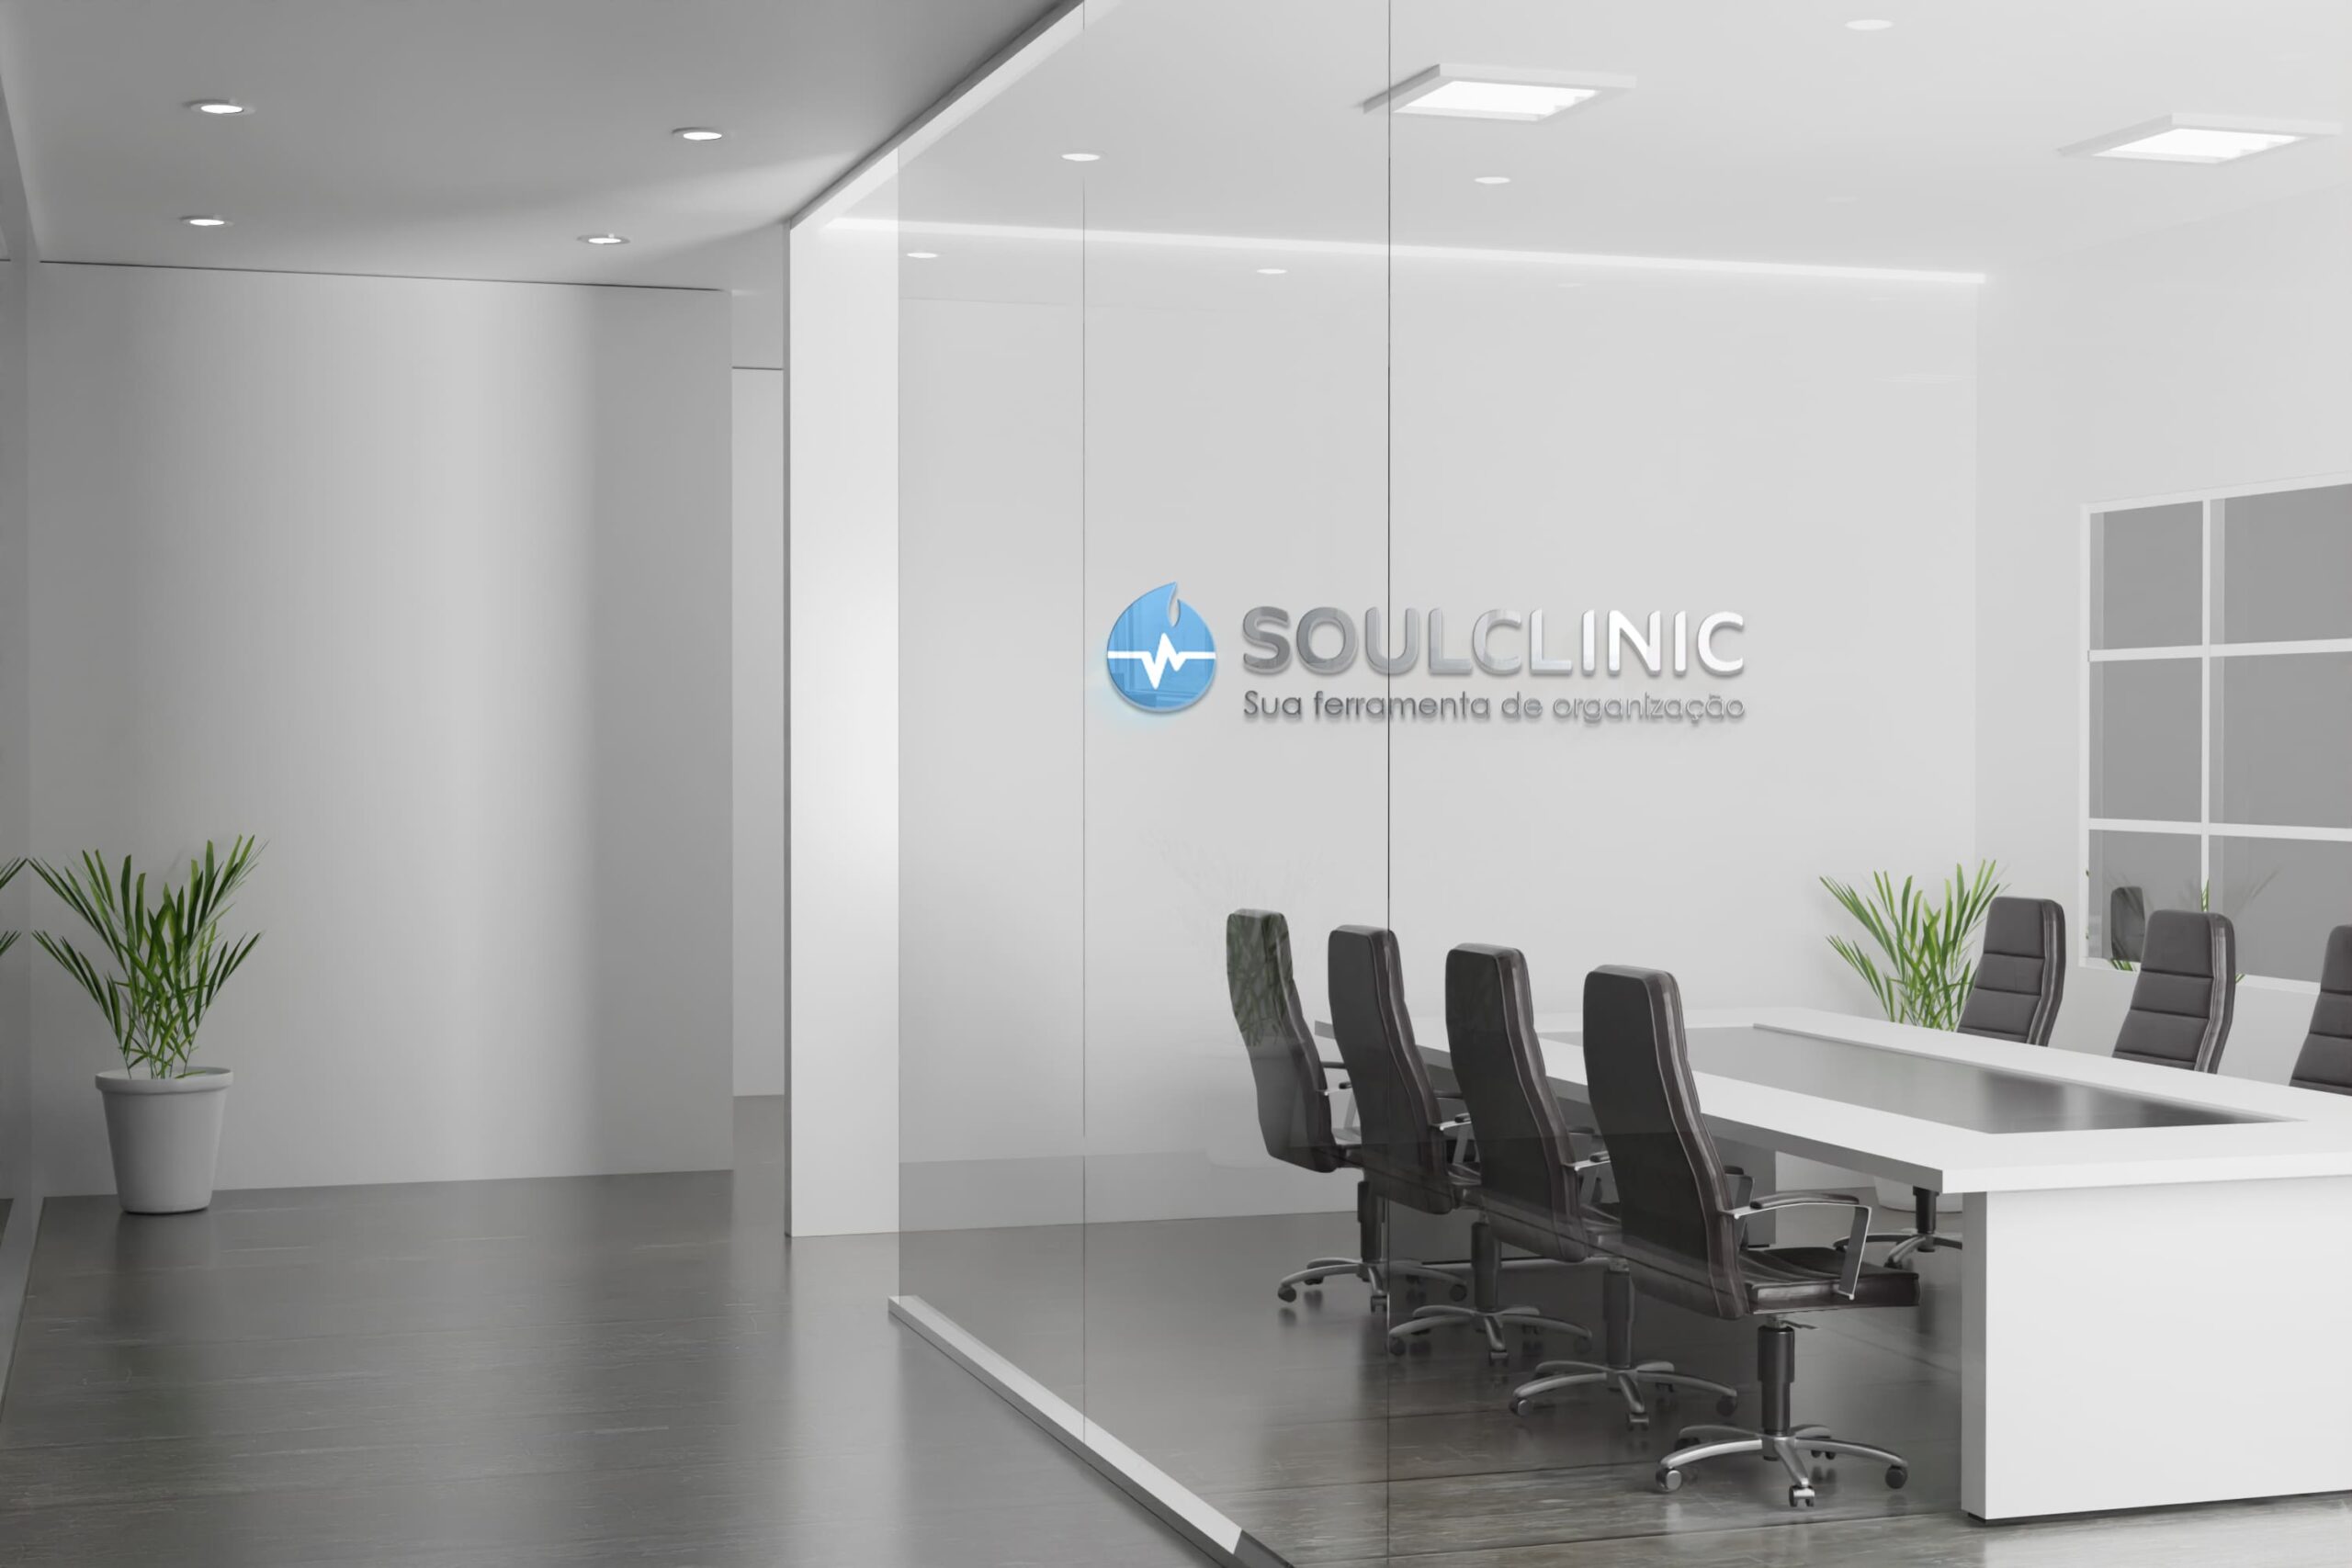 Sobre a SoulClinic